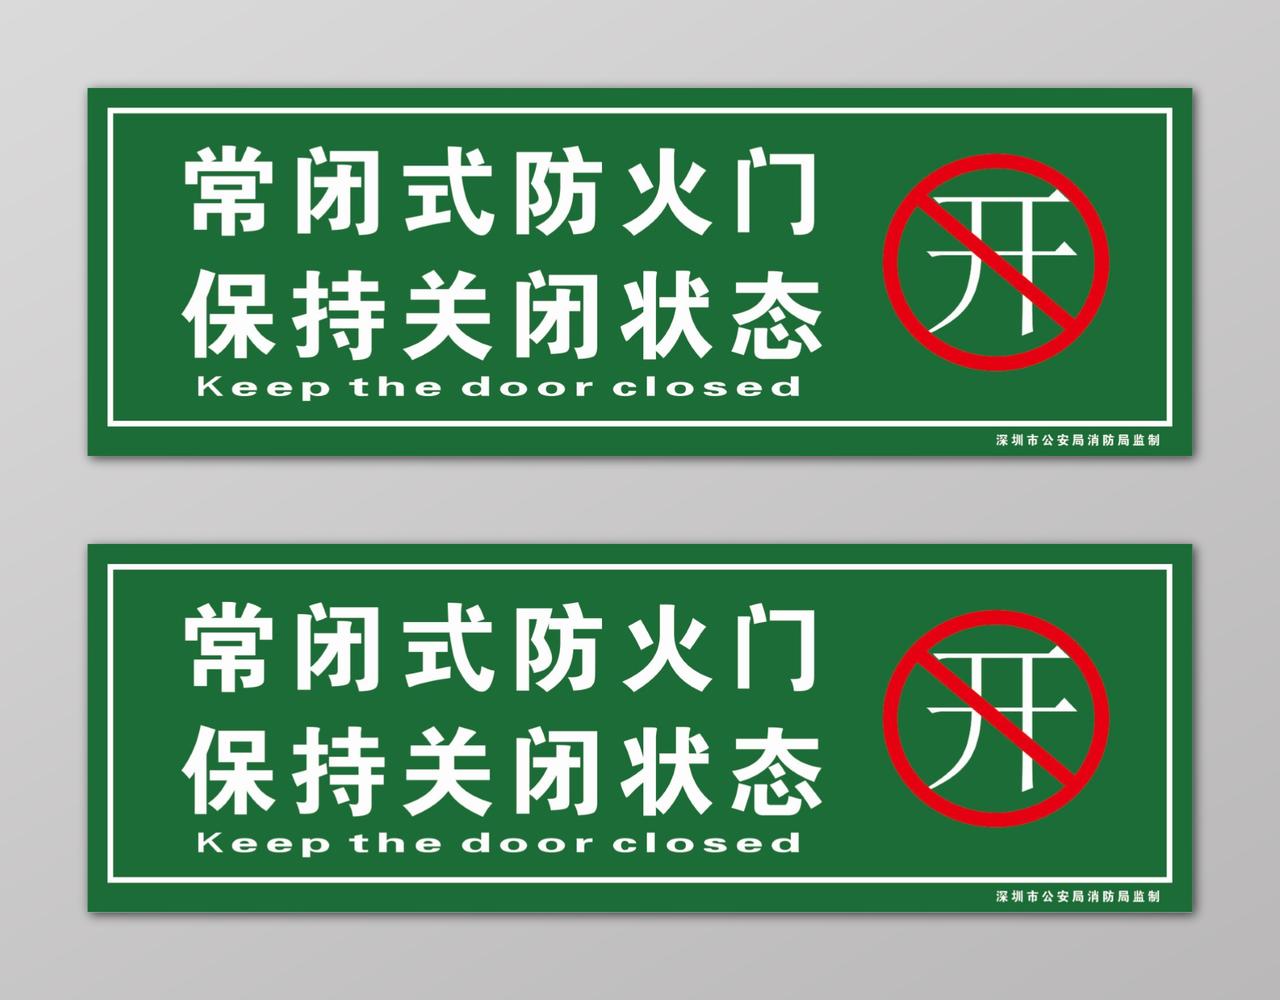 绿色常闭式防火门保持关闭状态消防安全标志牌